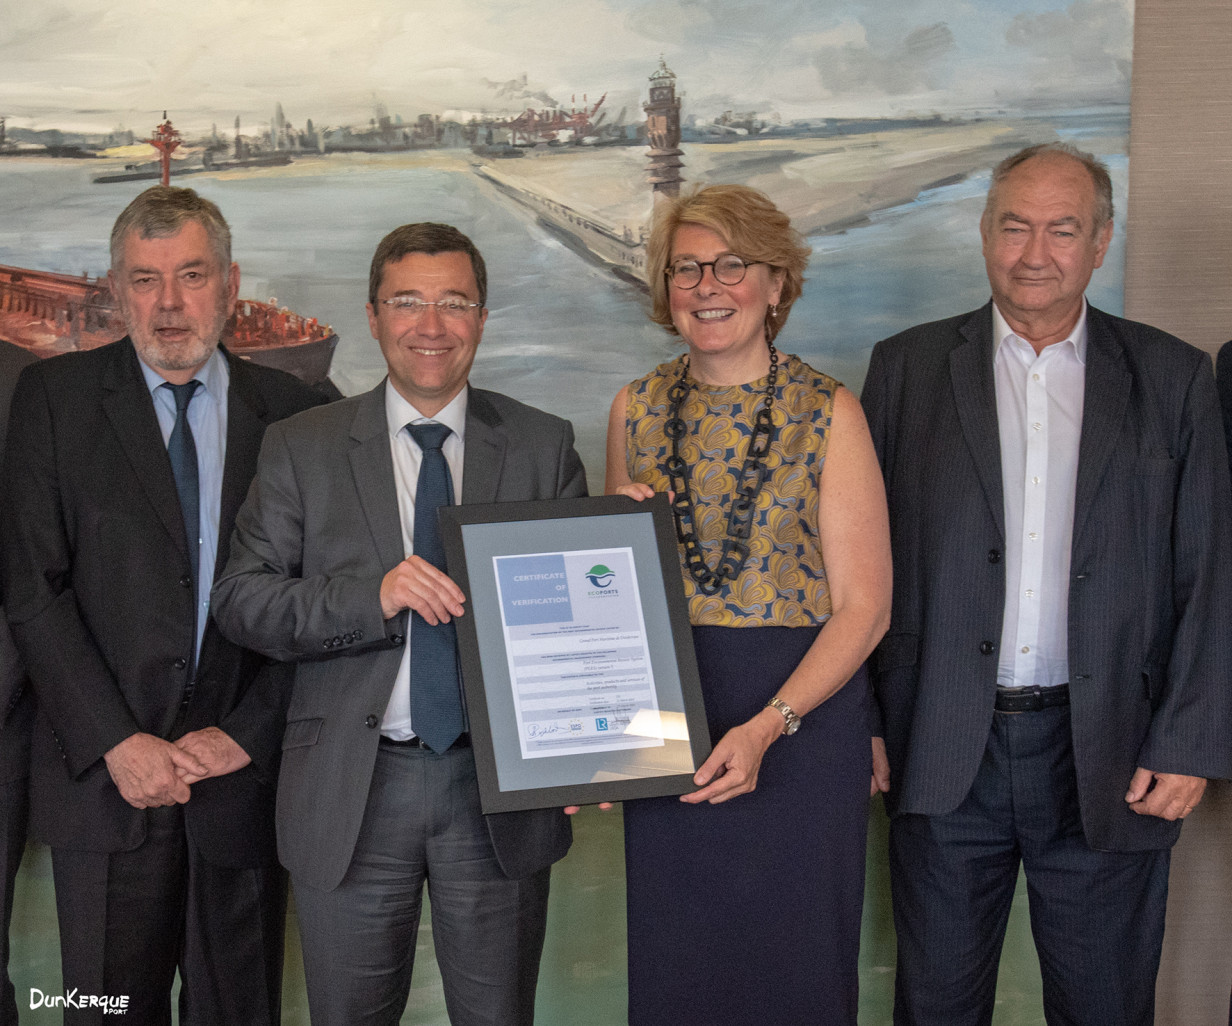 Dunkerque Port obtient la certification "PERS" du réseau EcoPorts